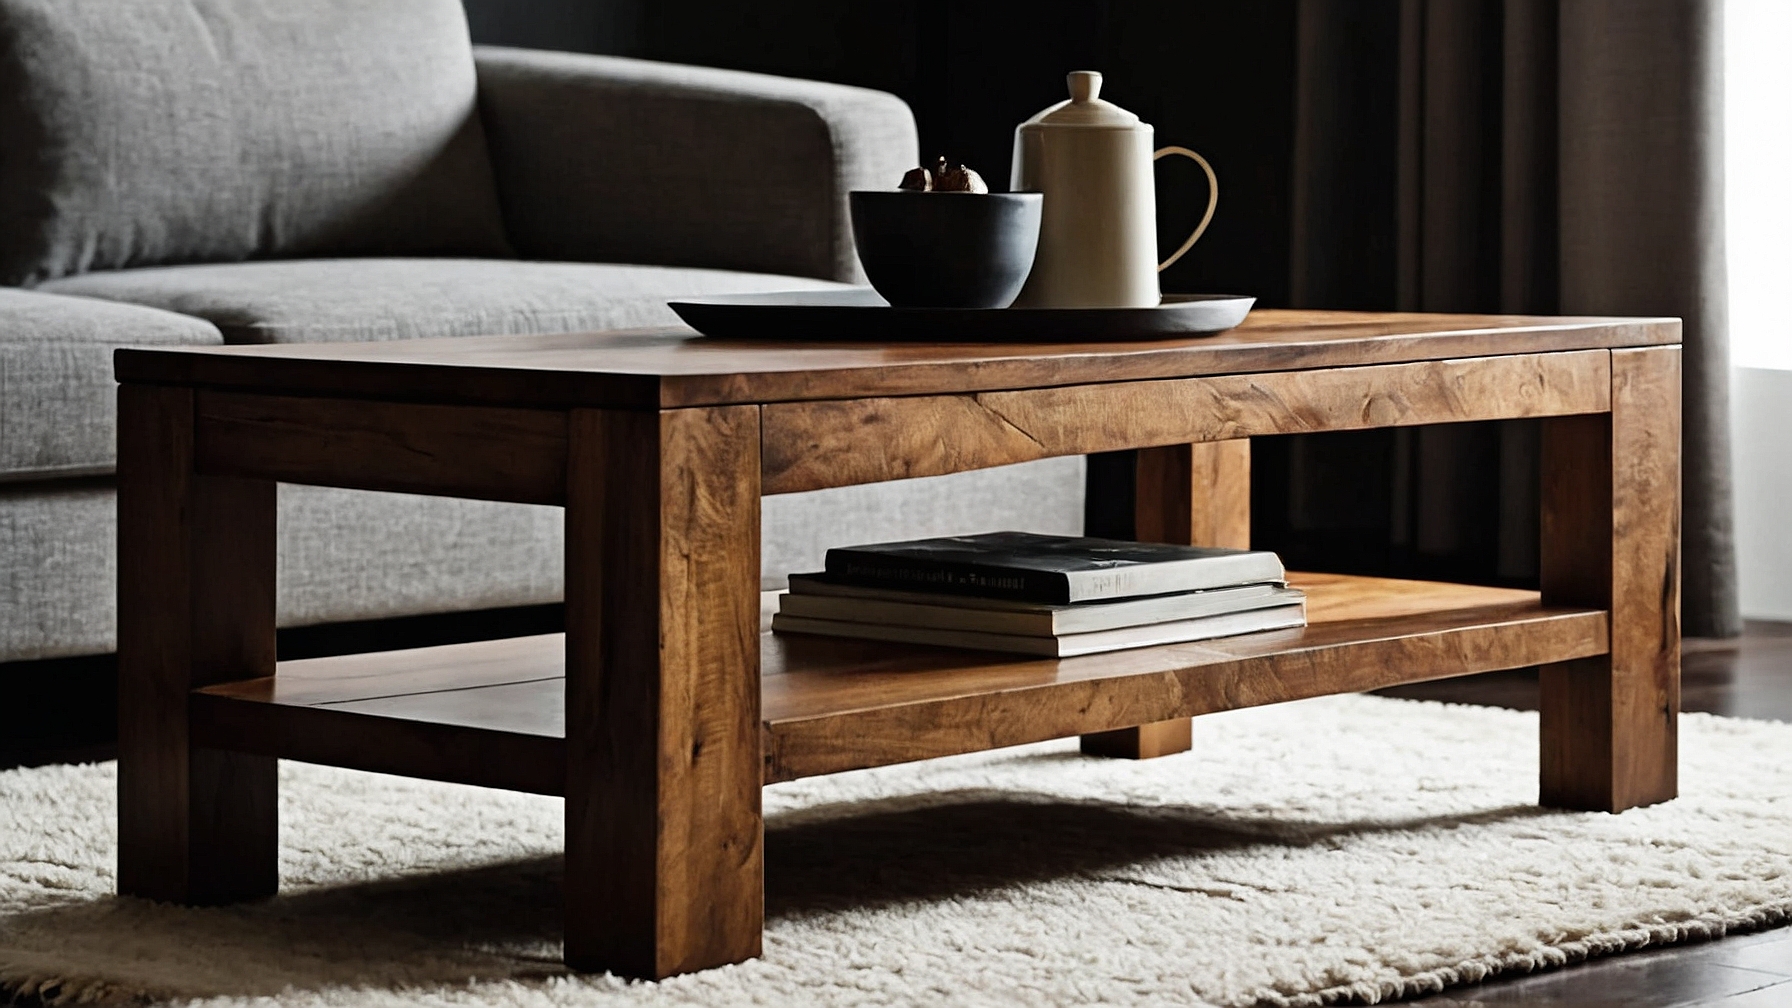 Default Minimalist house Wood Coffee Table Modern Style Timel 1 3